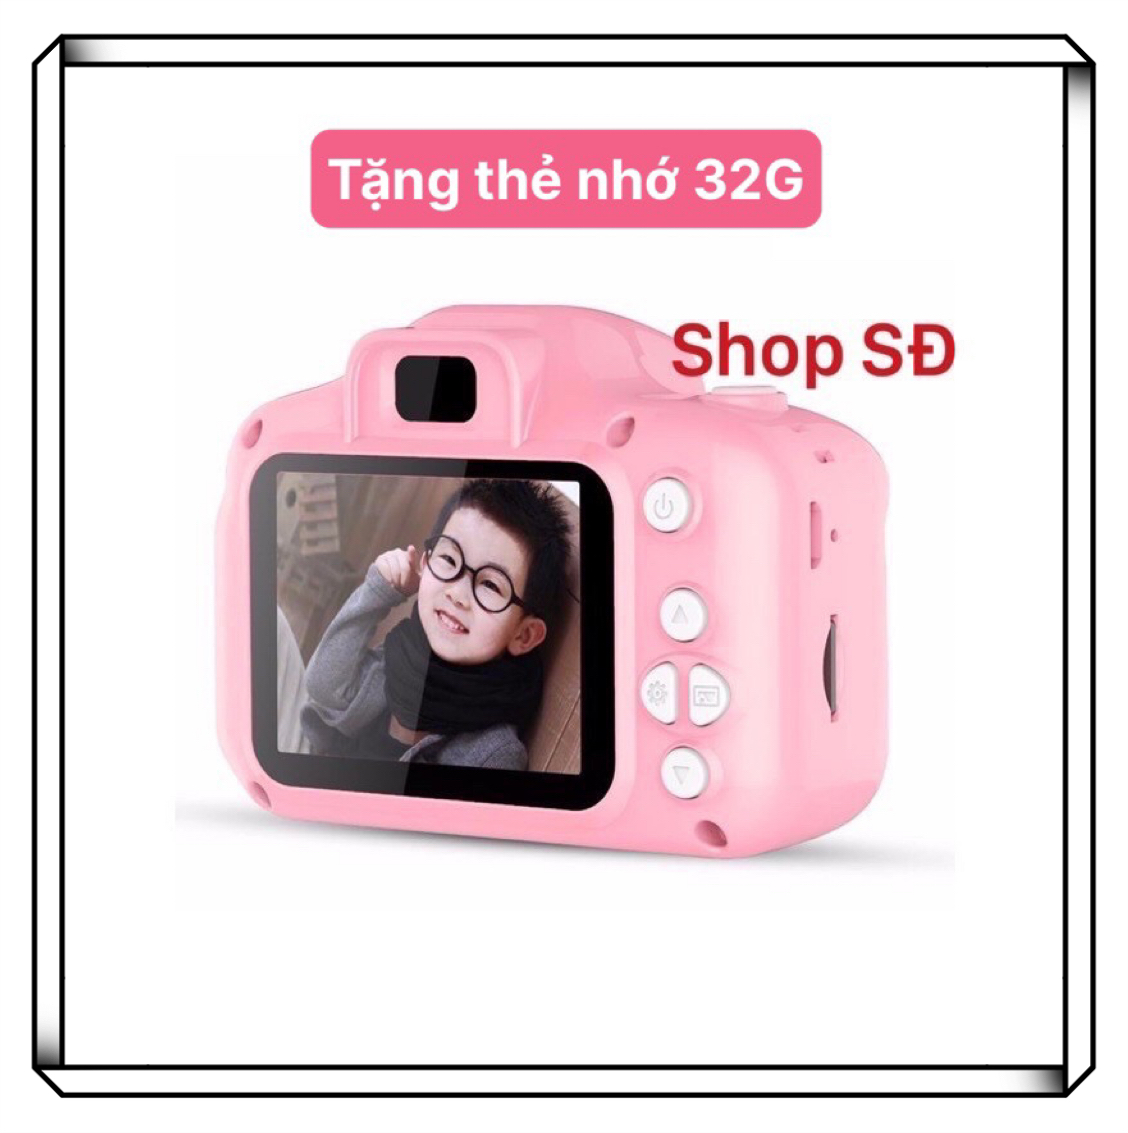 Máy chụp hình màu hồng dành cho bé gái - tặng thẻ nhớ 32G